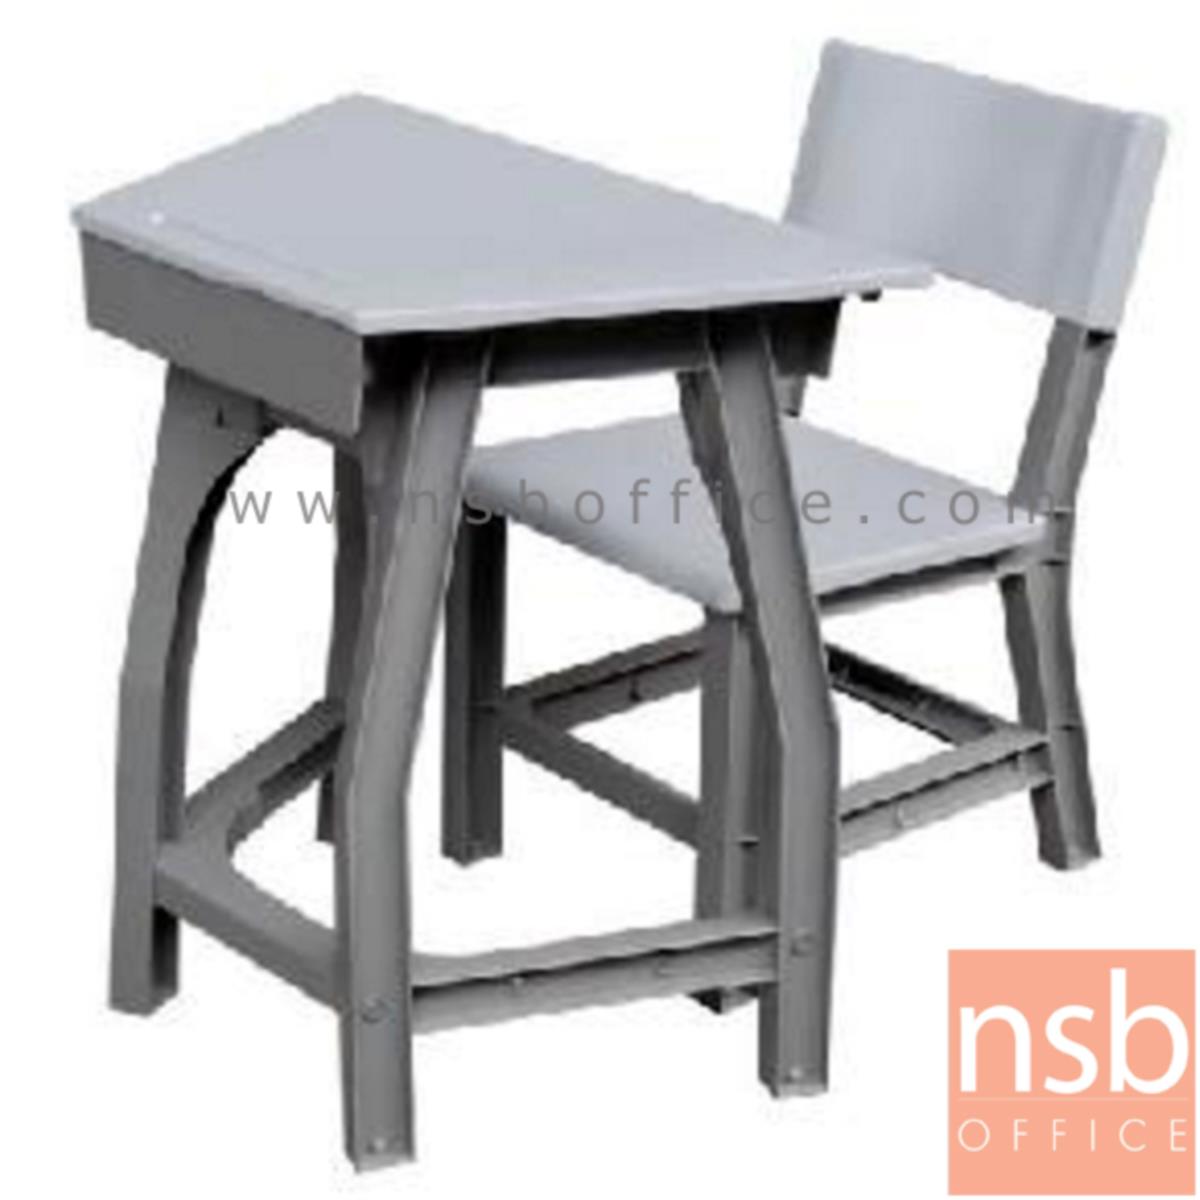 A17A040:ชุดโต๊ะและเก้าอี้นักเรียน รุ่น Almond (อัลมอนด์)  ระดับชั้นประถม ขาพลาสติก